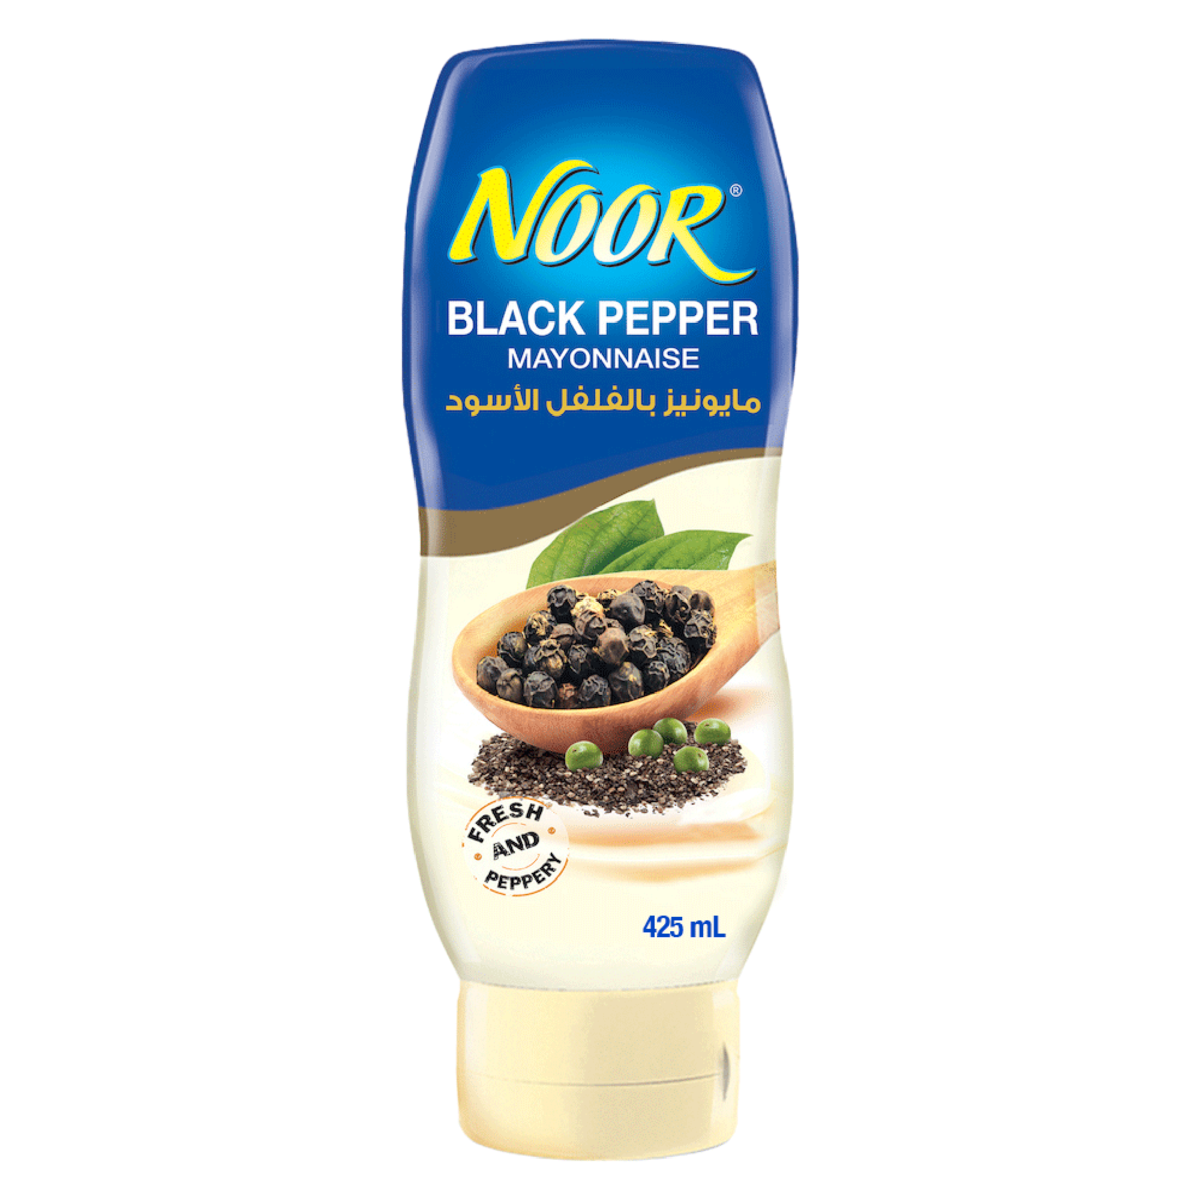 Noor Black Pepper Mayonnaise 425 ml